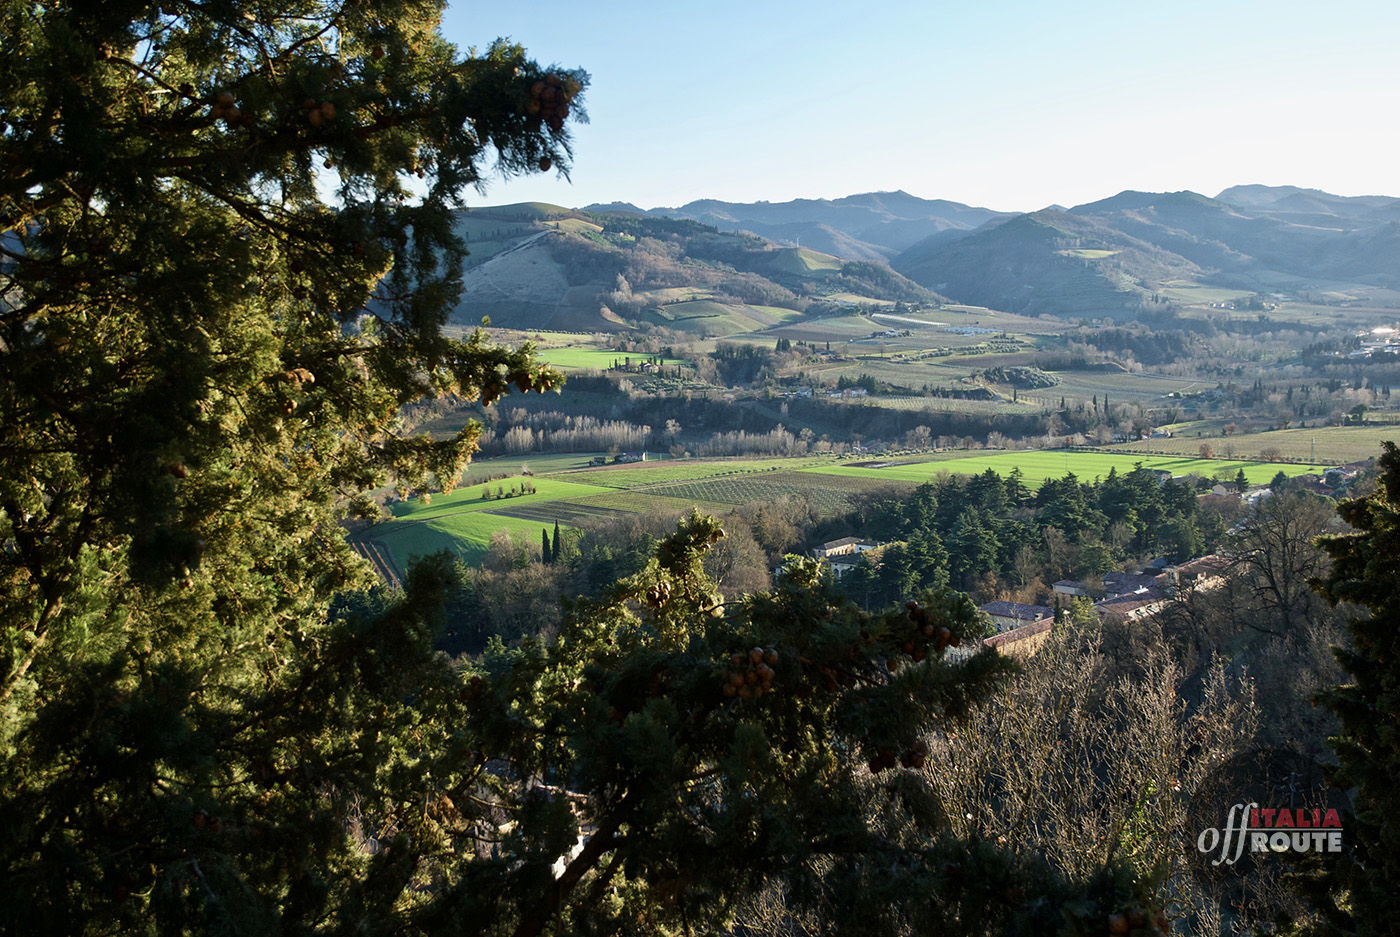 La campagna romagnola vista dal Santuario del Monticino, terza tappa de La passeggiata dei tre colli.